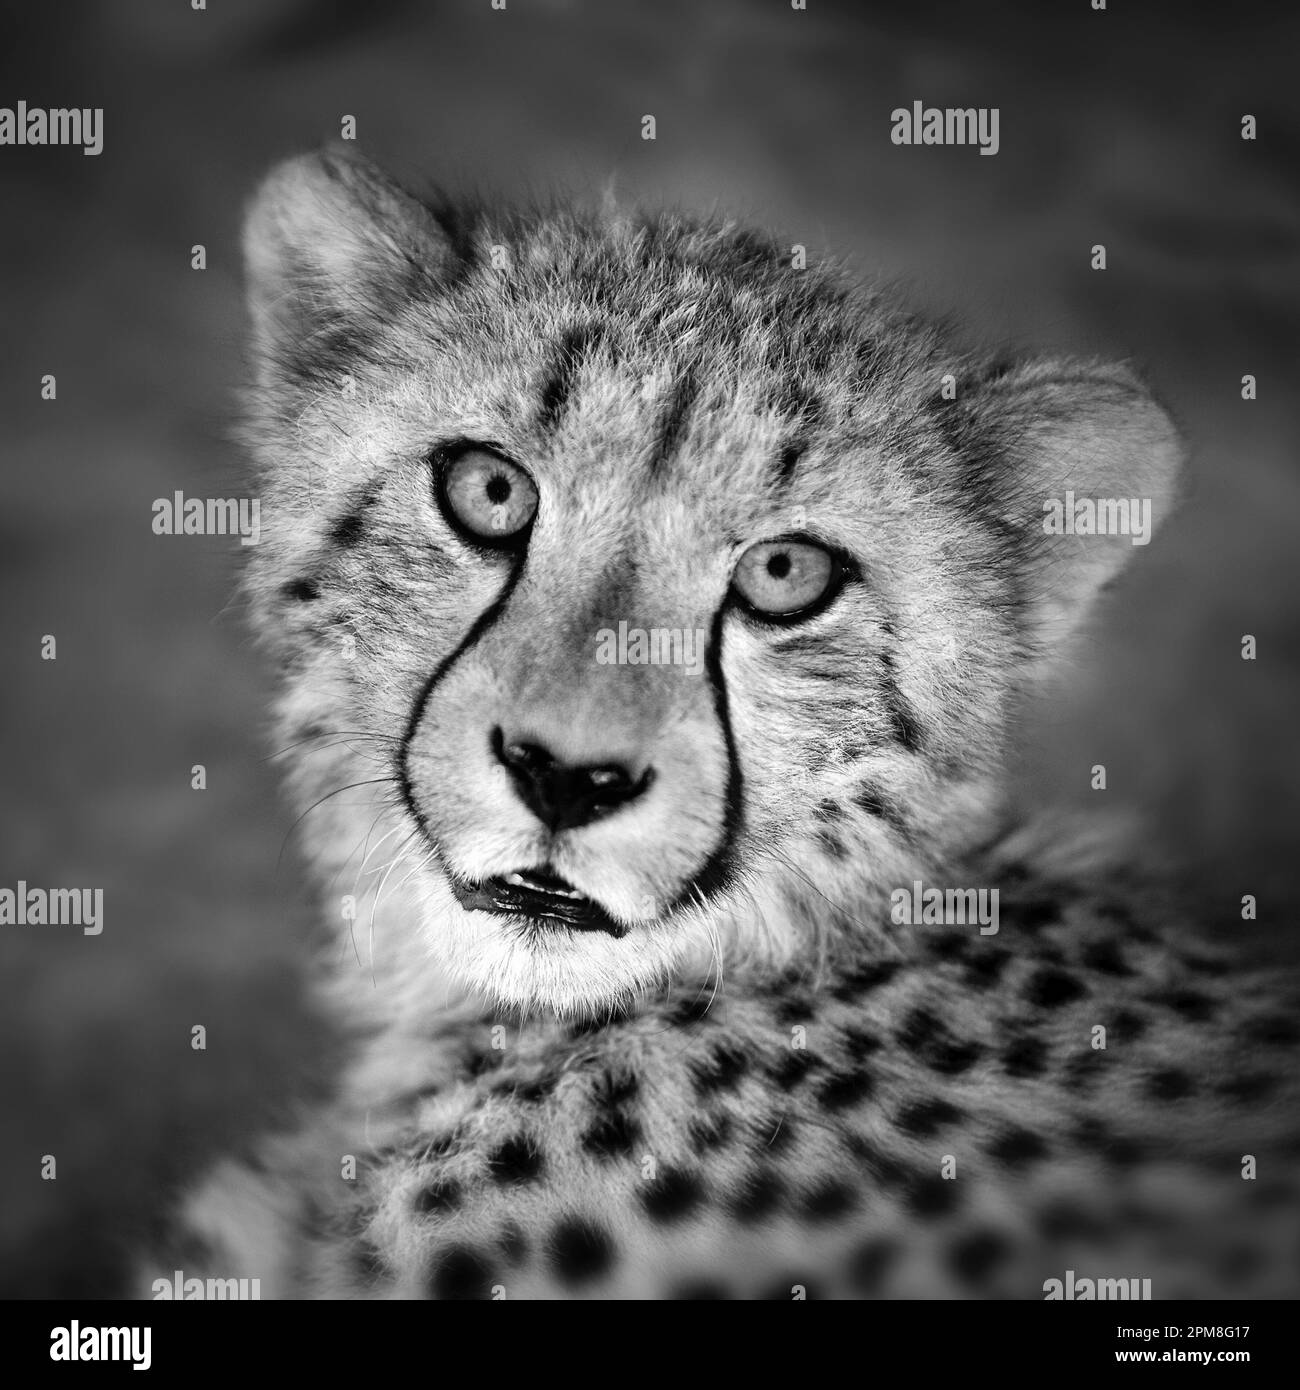 Sudafrica, Pretoria, Cheetah (Acionyx jubatus). Prigionia. Immagine in bianco e nero. Foto Stock